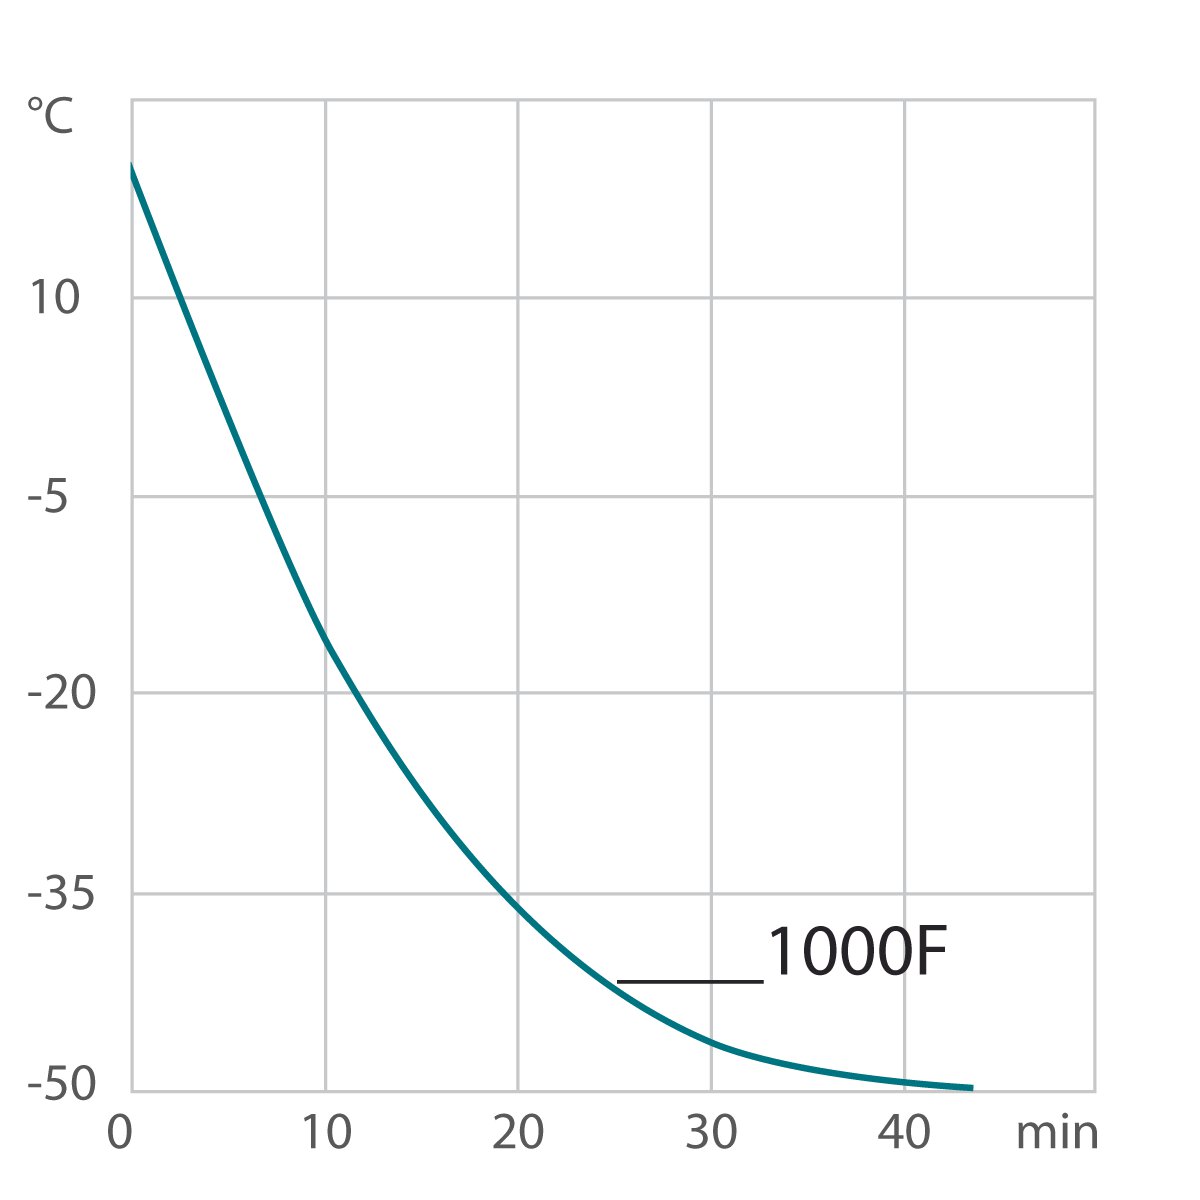 Curva de refrigeración criotstato de circulación / termostato de laboratorio 1000F